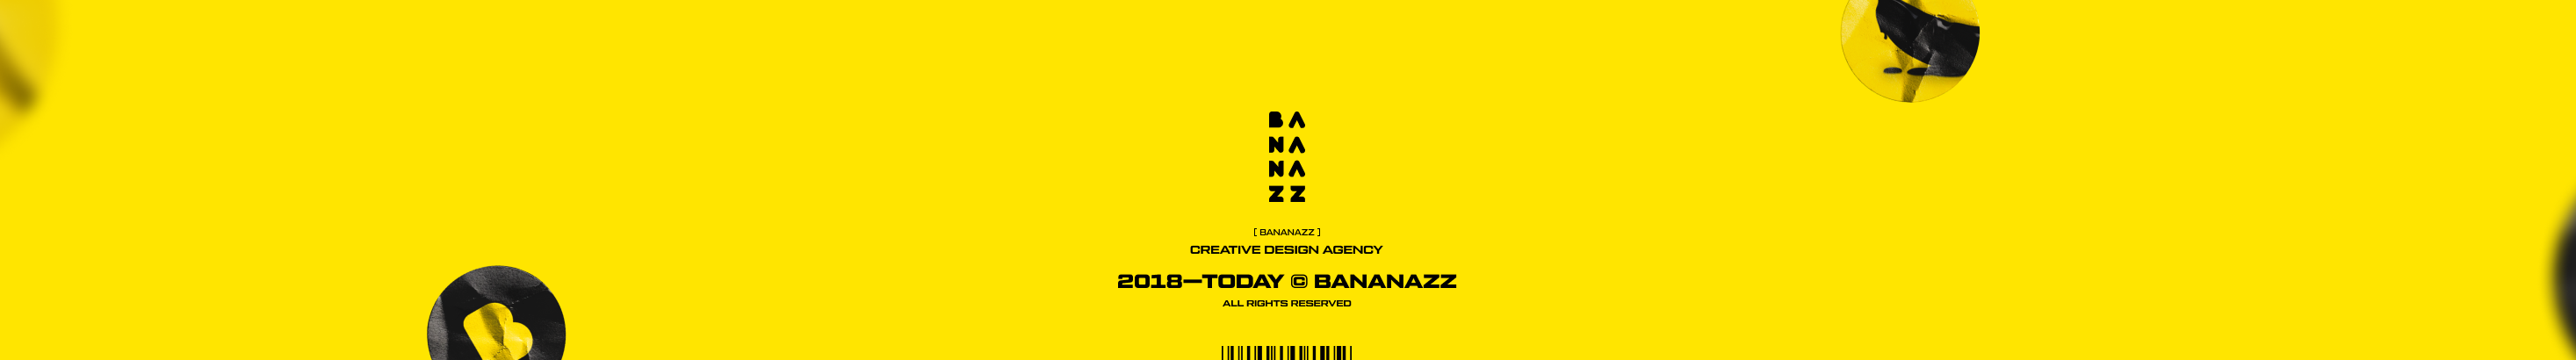 Bananazz Agency のプロファイルバナー